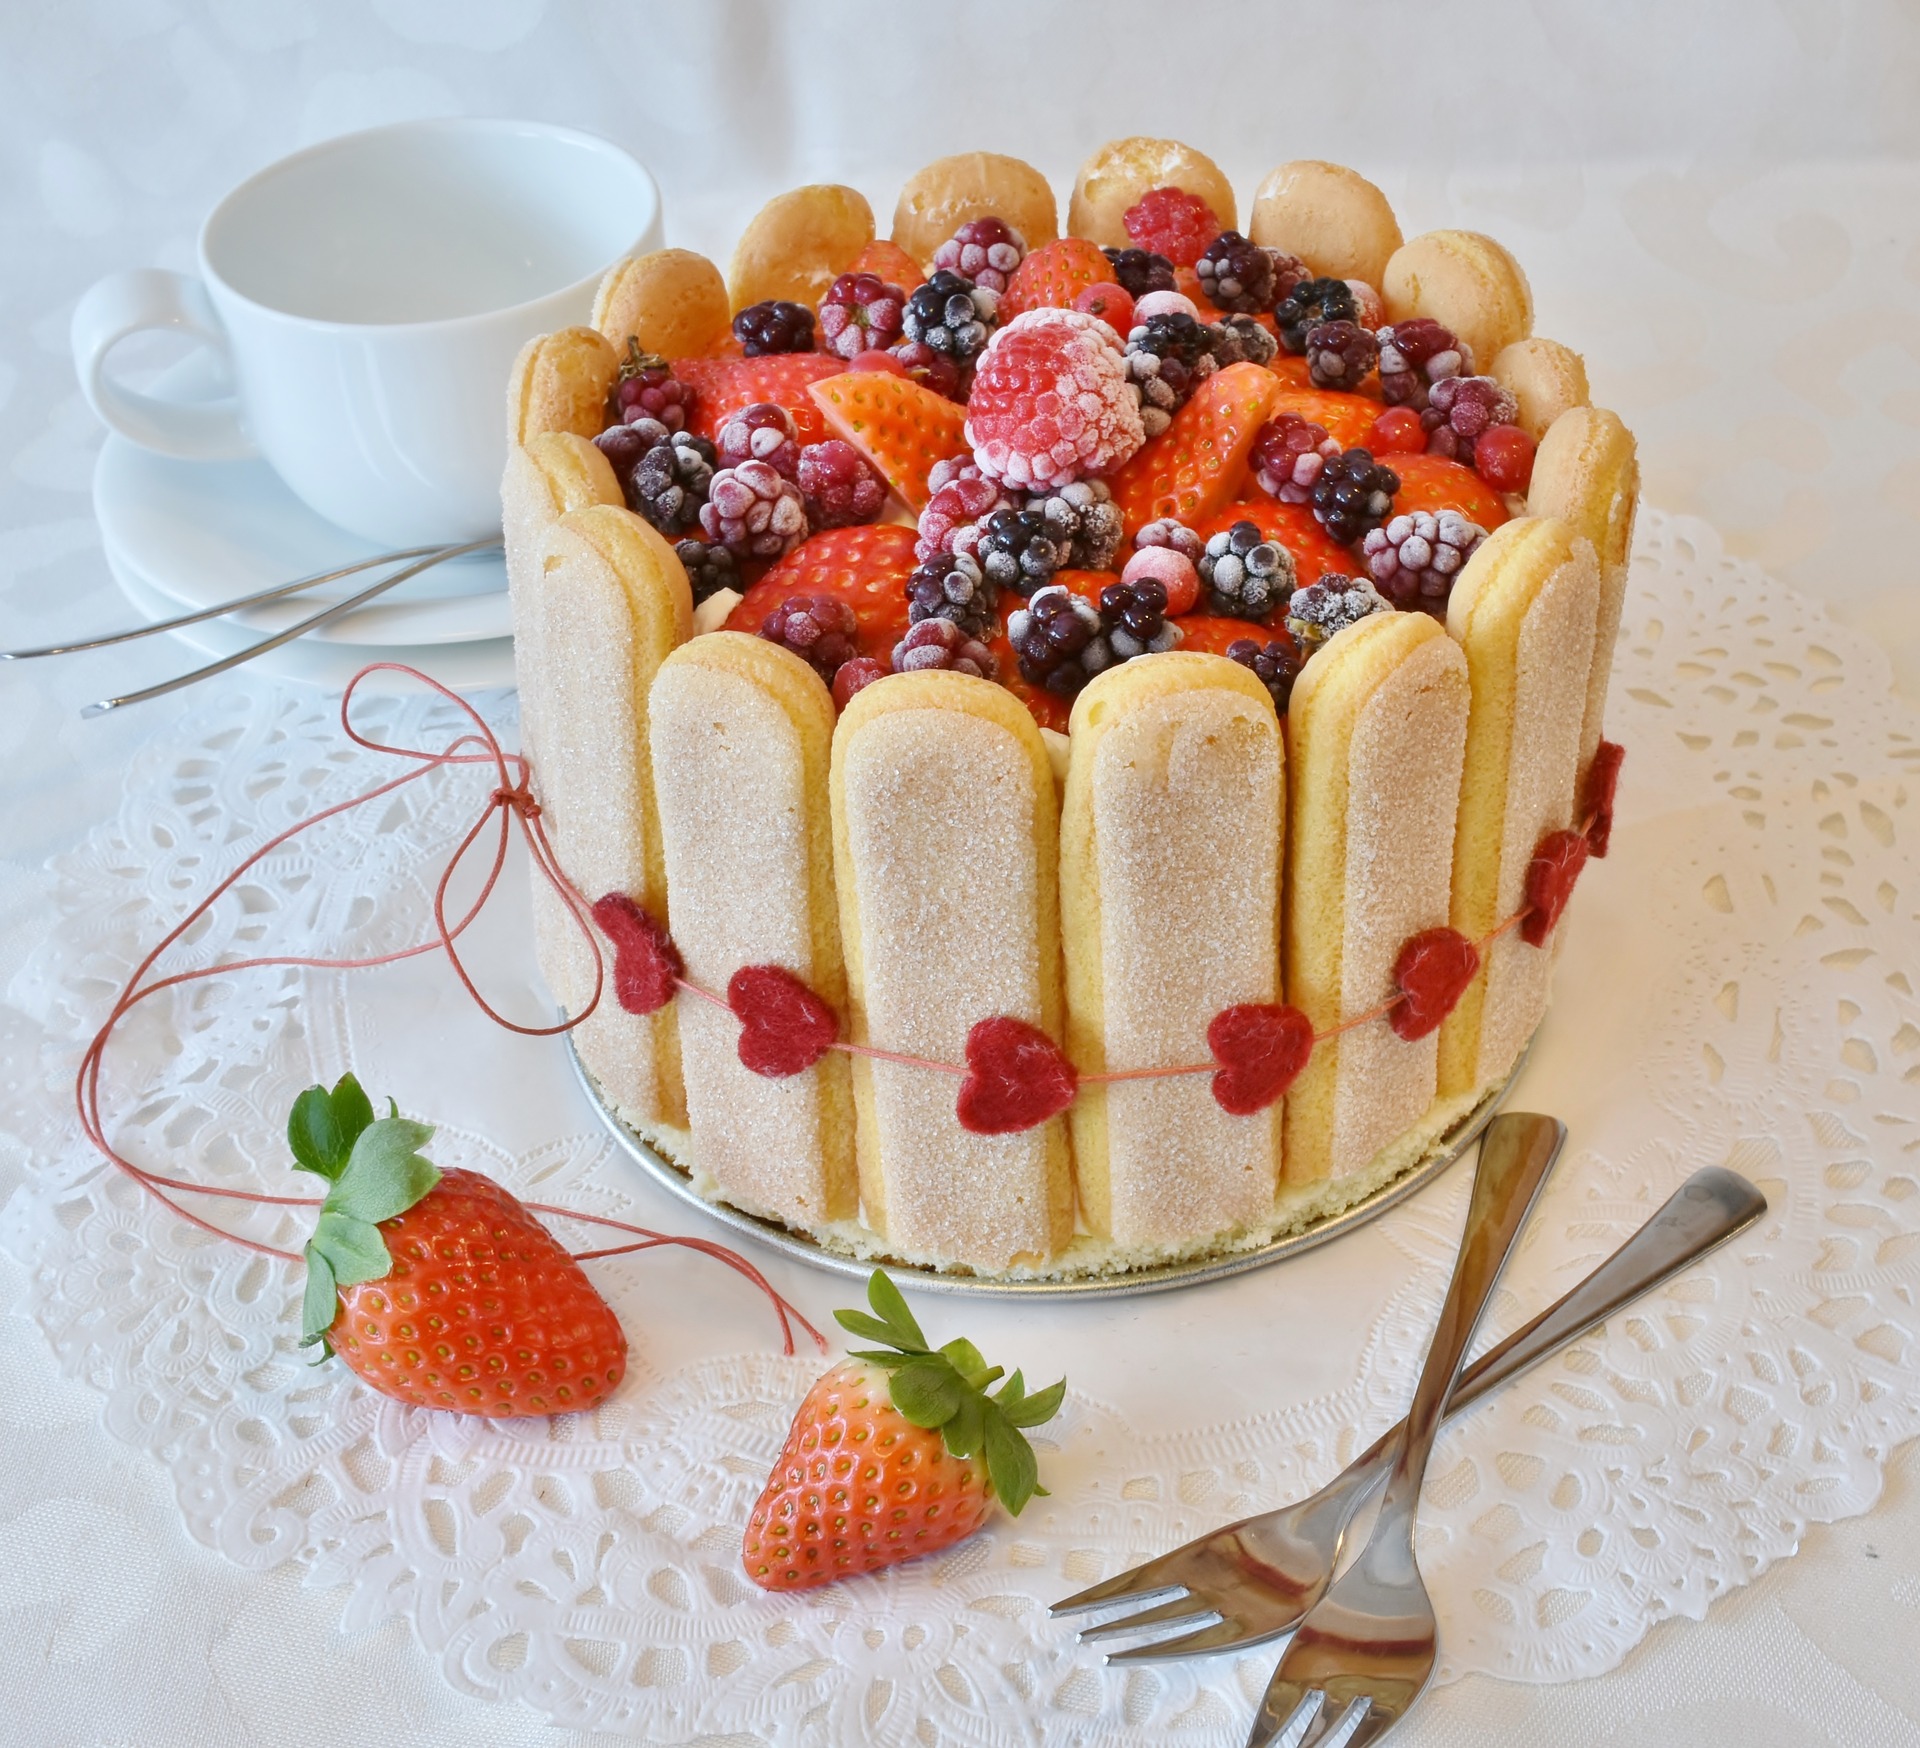 Recette Charlotte aux fruits rouges et crème recette desserts et gateaux CakeMania